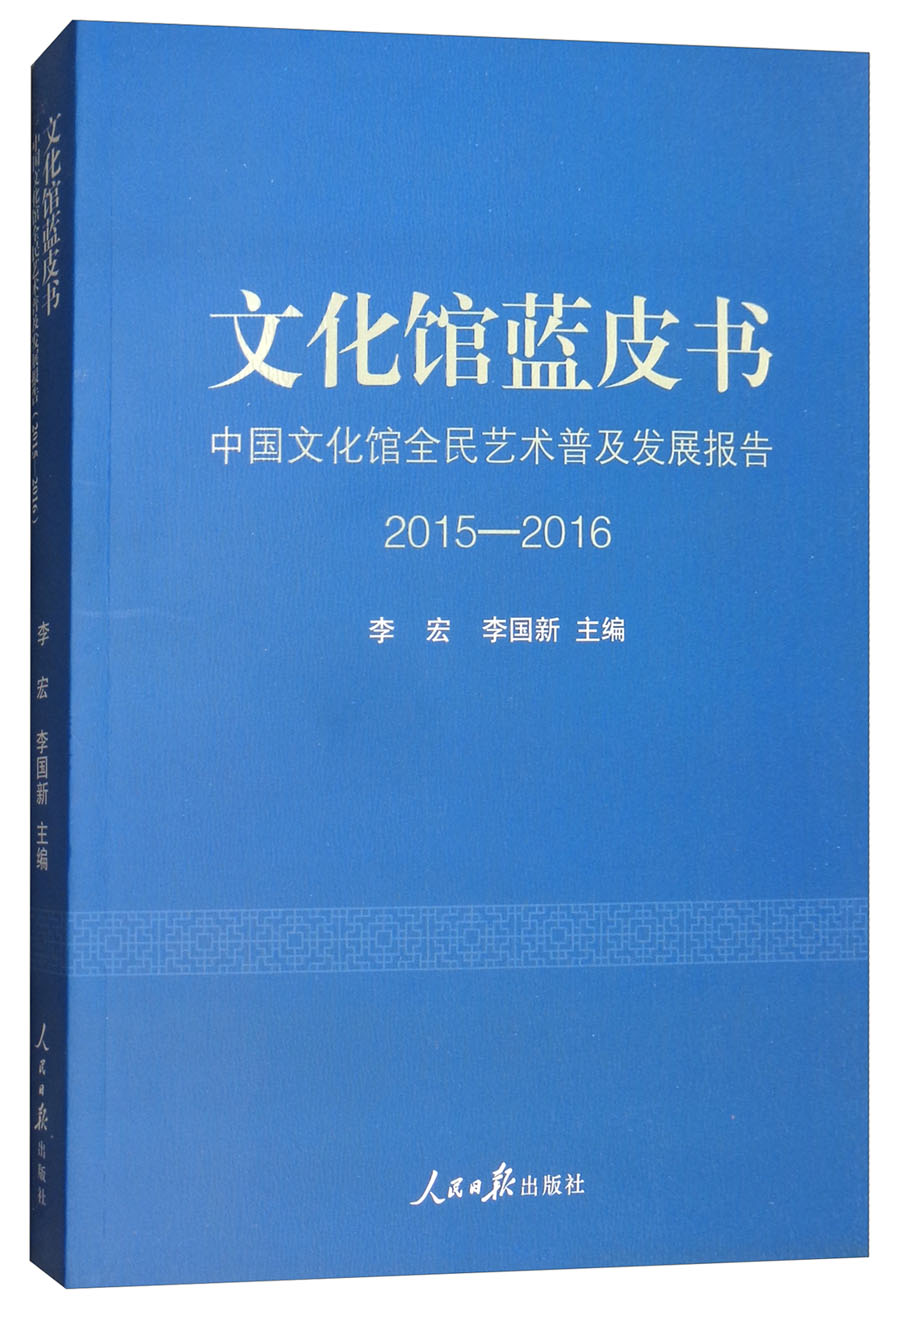 文化馆蓝皮书：中国文化馆全民艺术普及发展报告2015-2016 kindle格式下载